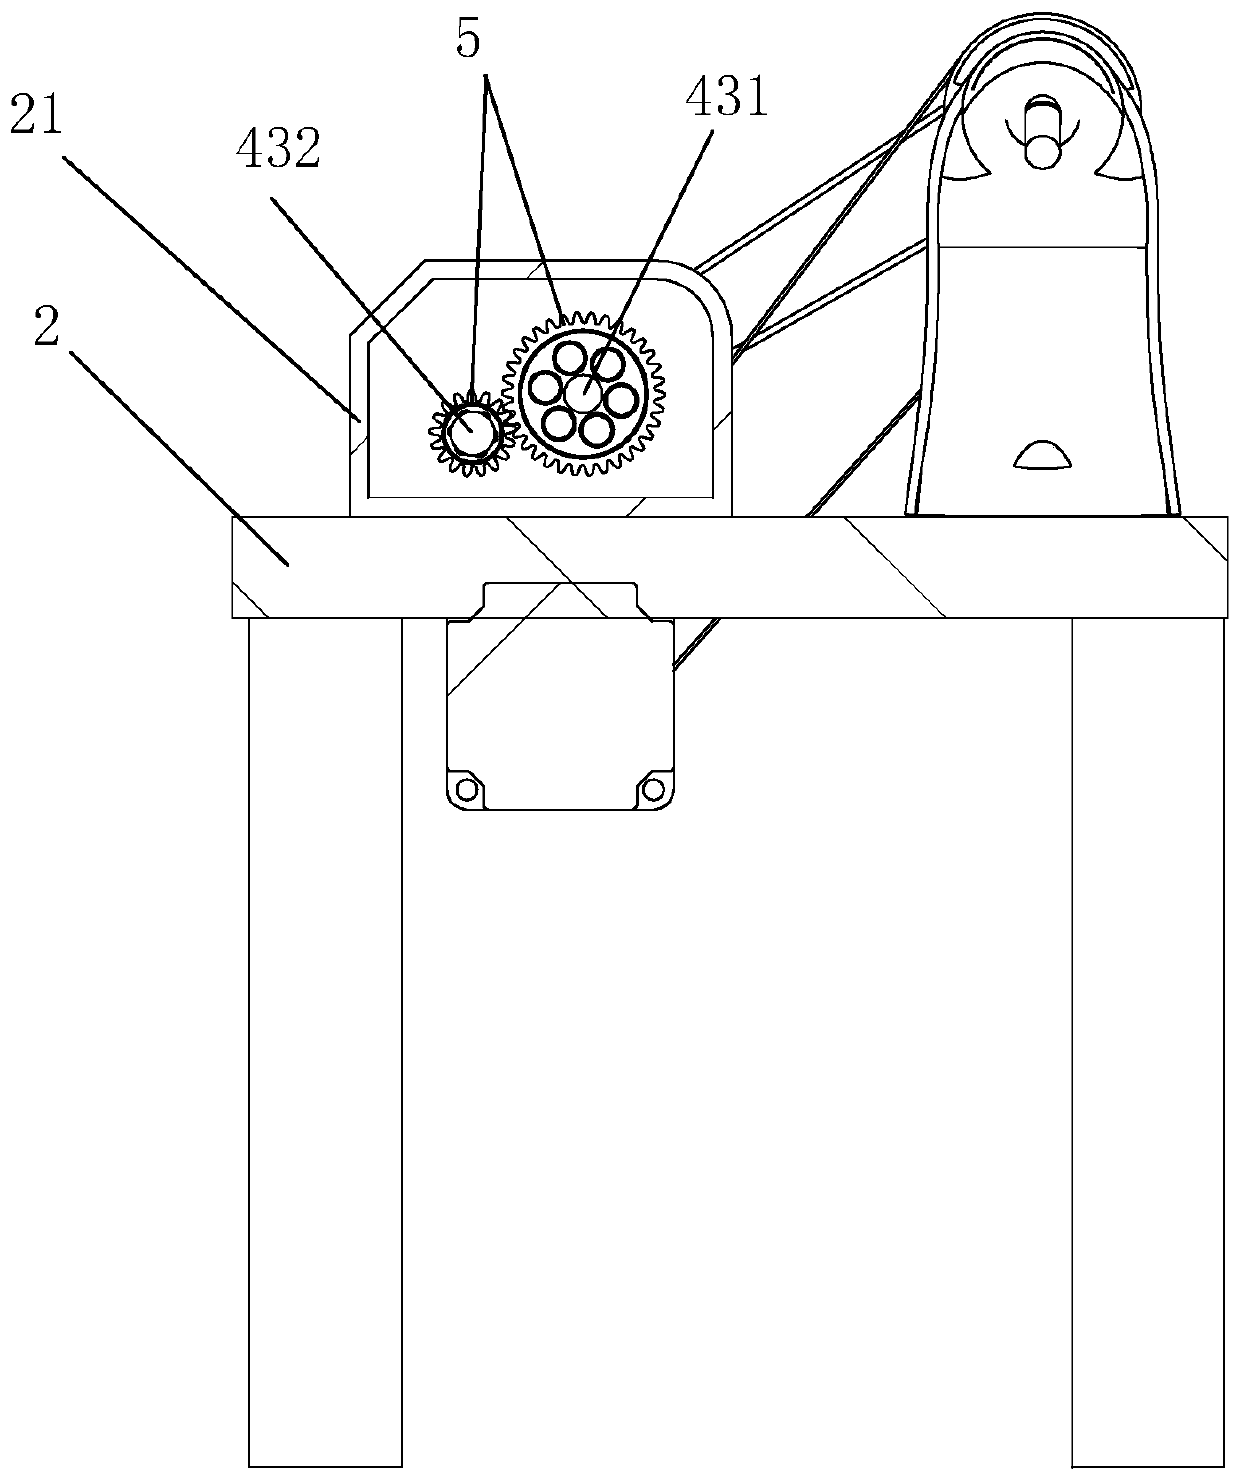 A sewing machine presser foot device